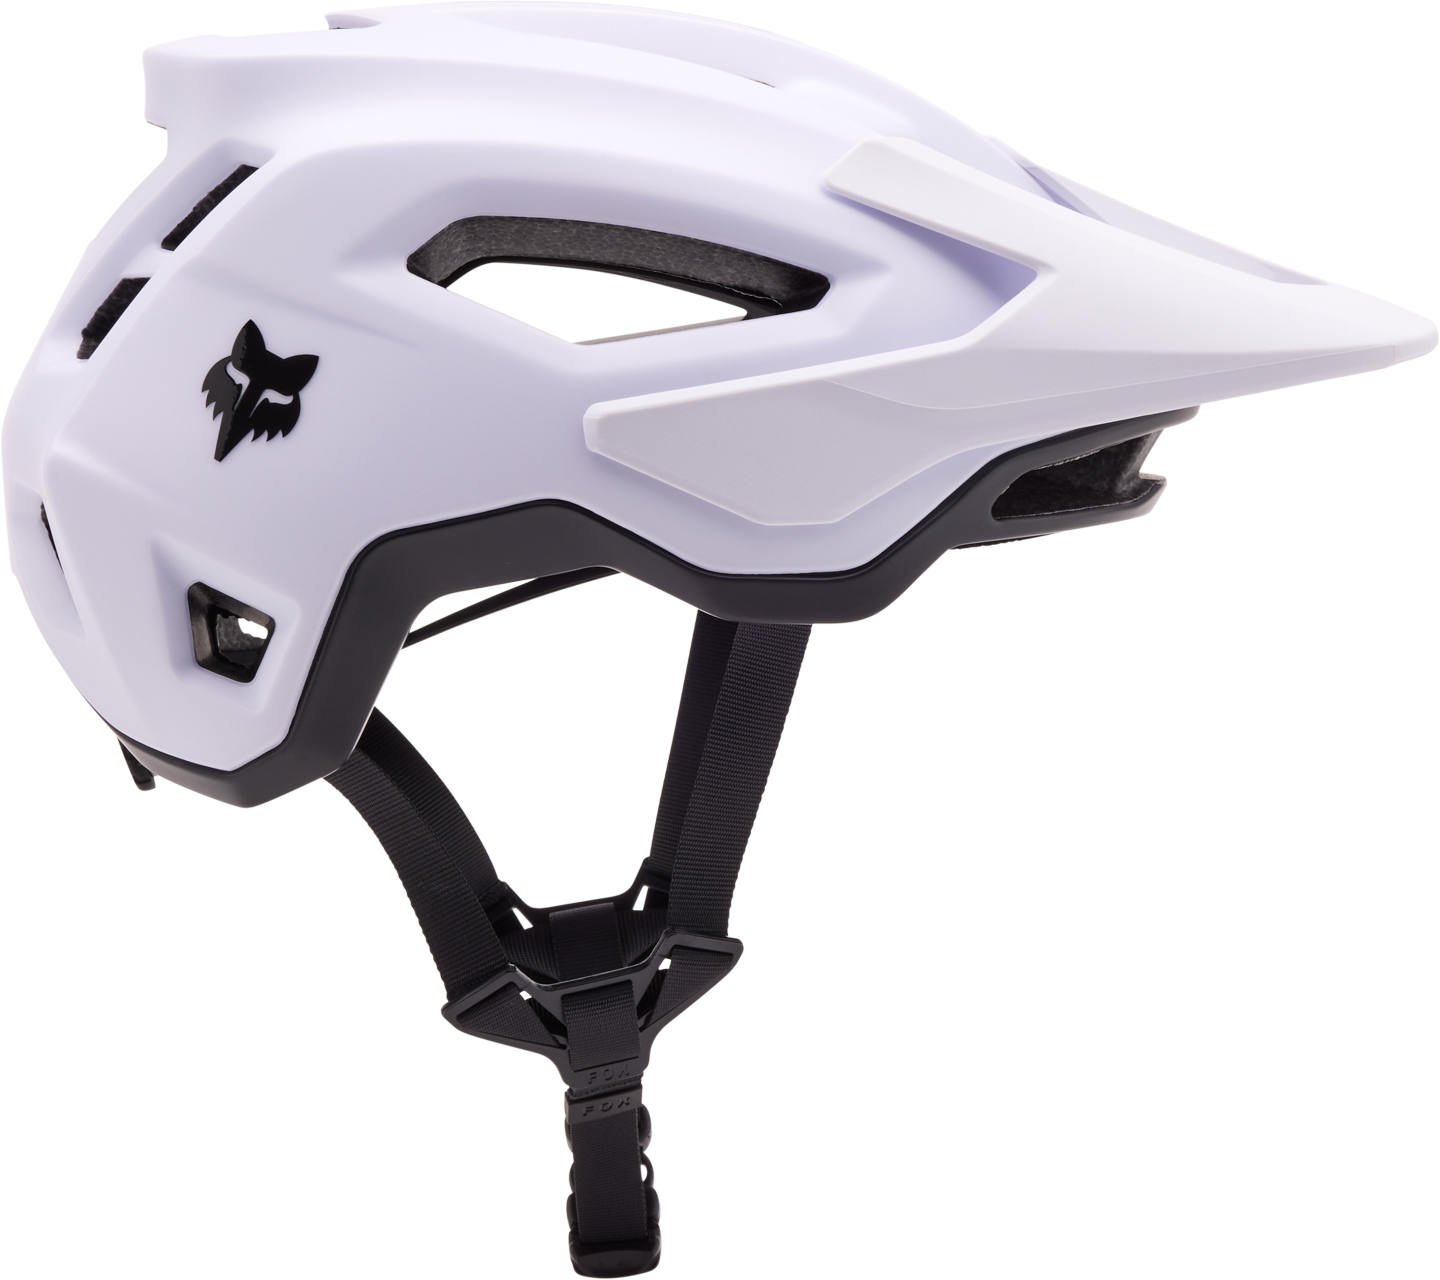 Fox Speedframe Helmet MIPS